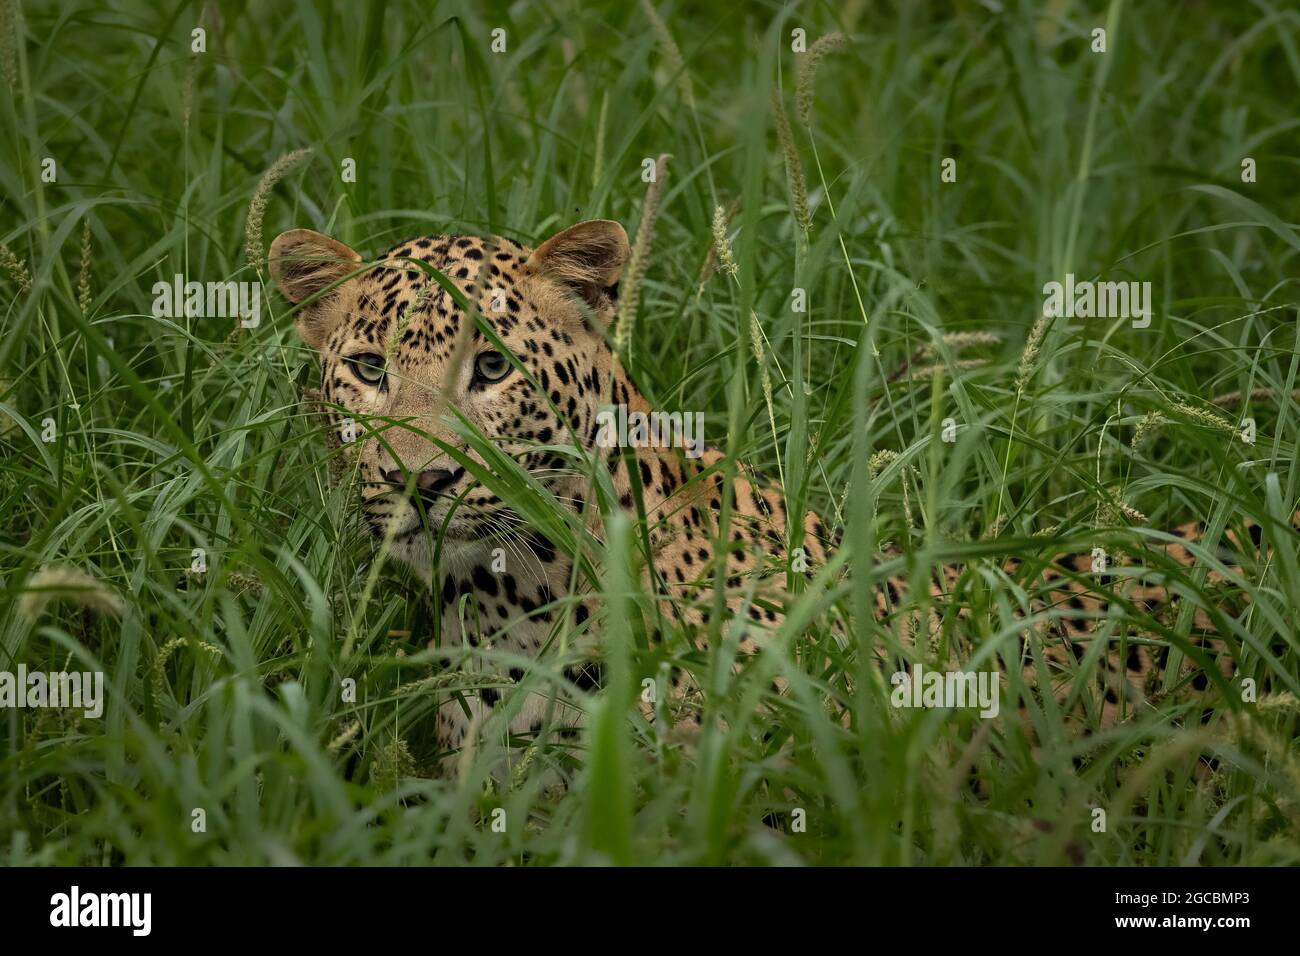 un cub indien en léopard dans une forêt de mousson verte luxuriante de l'Inde Banque D'Images